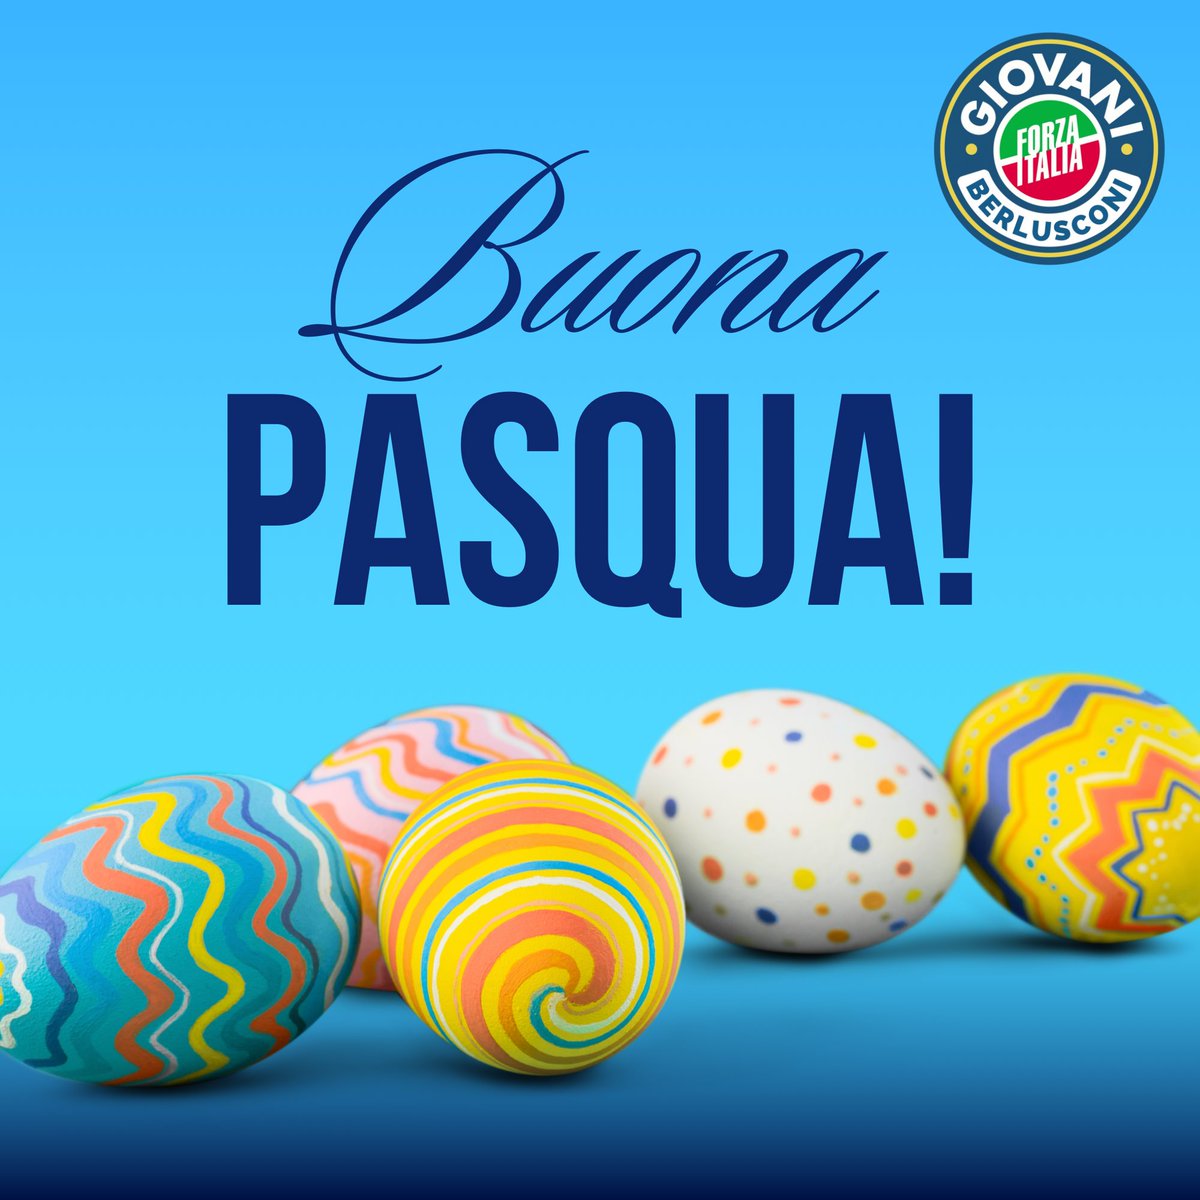 Buona Pasqua a tutti da Forza Italia Giovani! 💙🕊